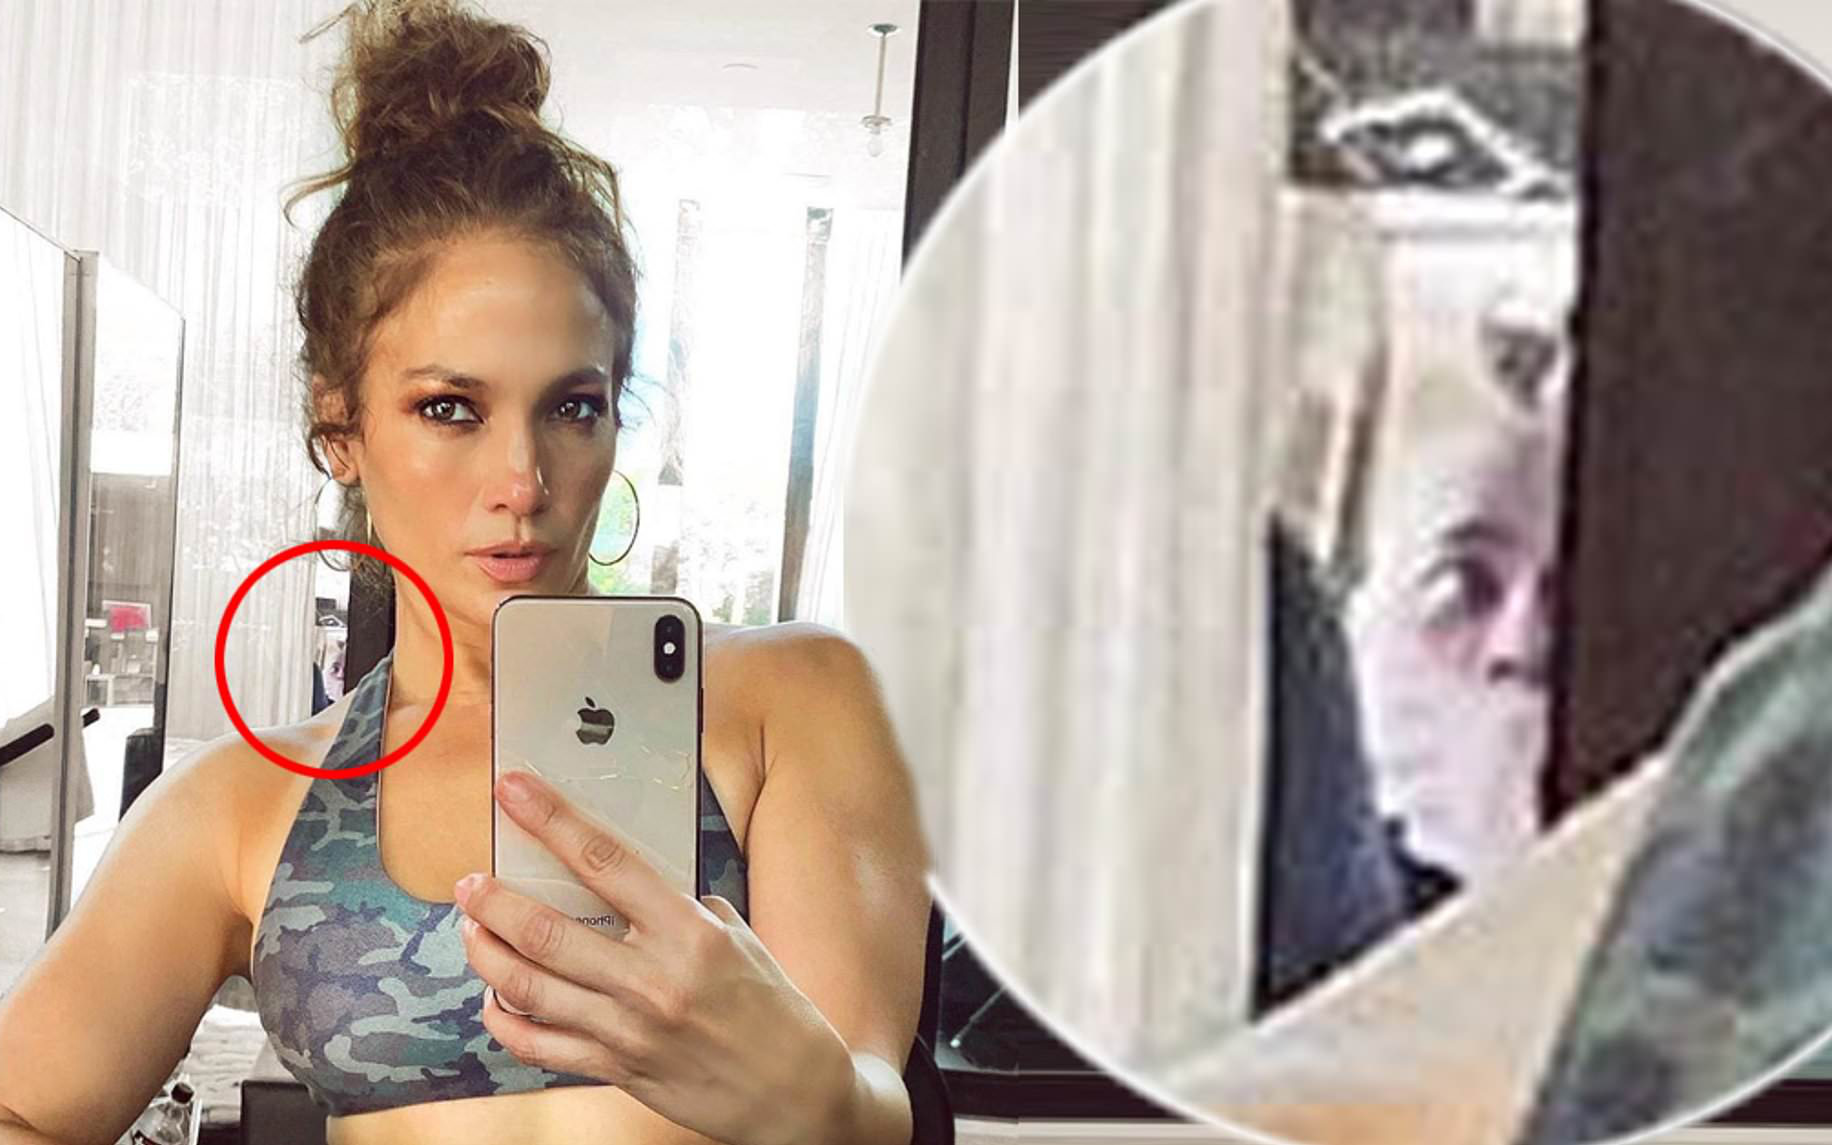 Bức ảnh khiến cả MXH rùng mình: Jennifer Lopez khoe ảnh body, người đàn ông bí ẩn như bị bịt mồm bỗng lấp ló sau lưng